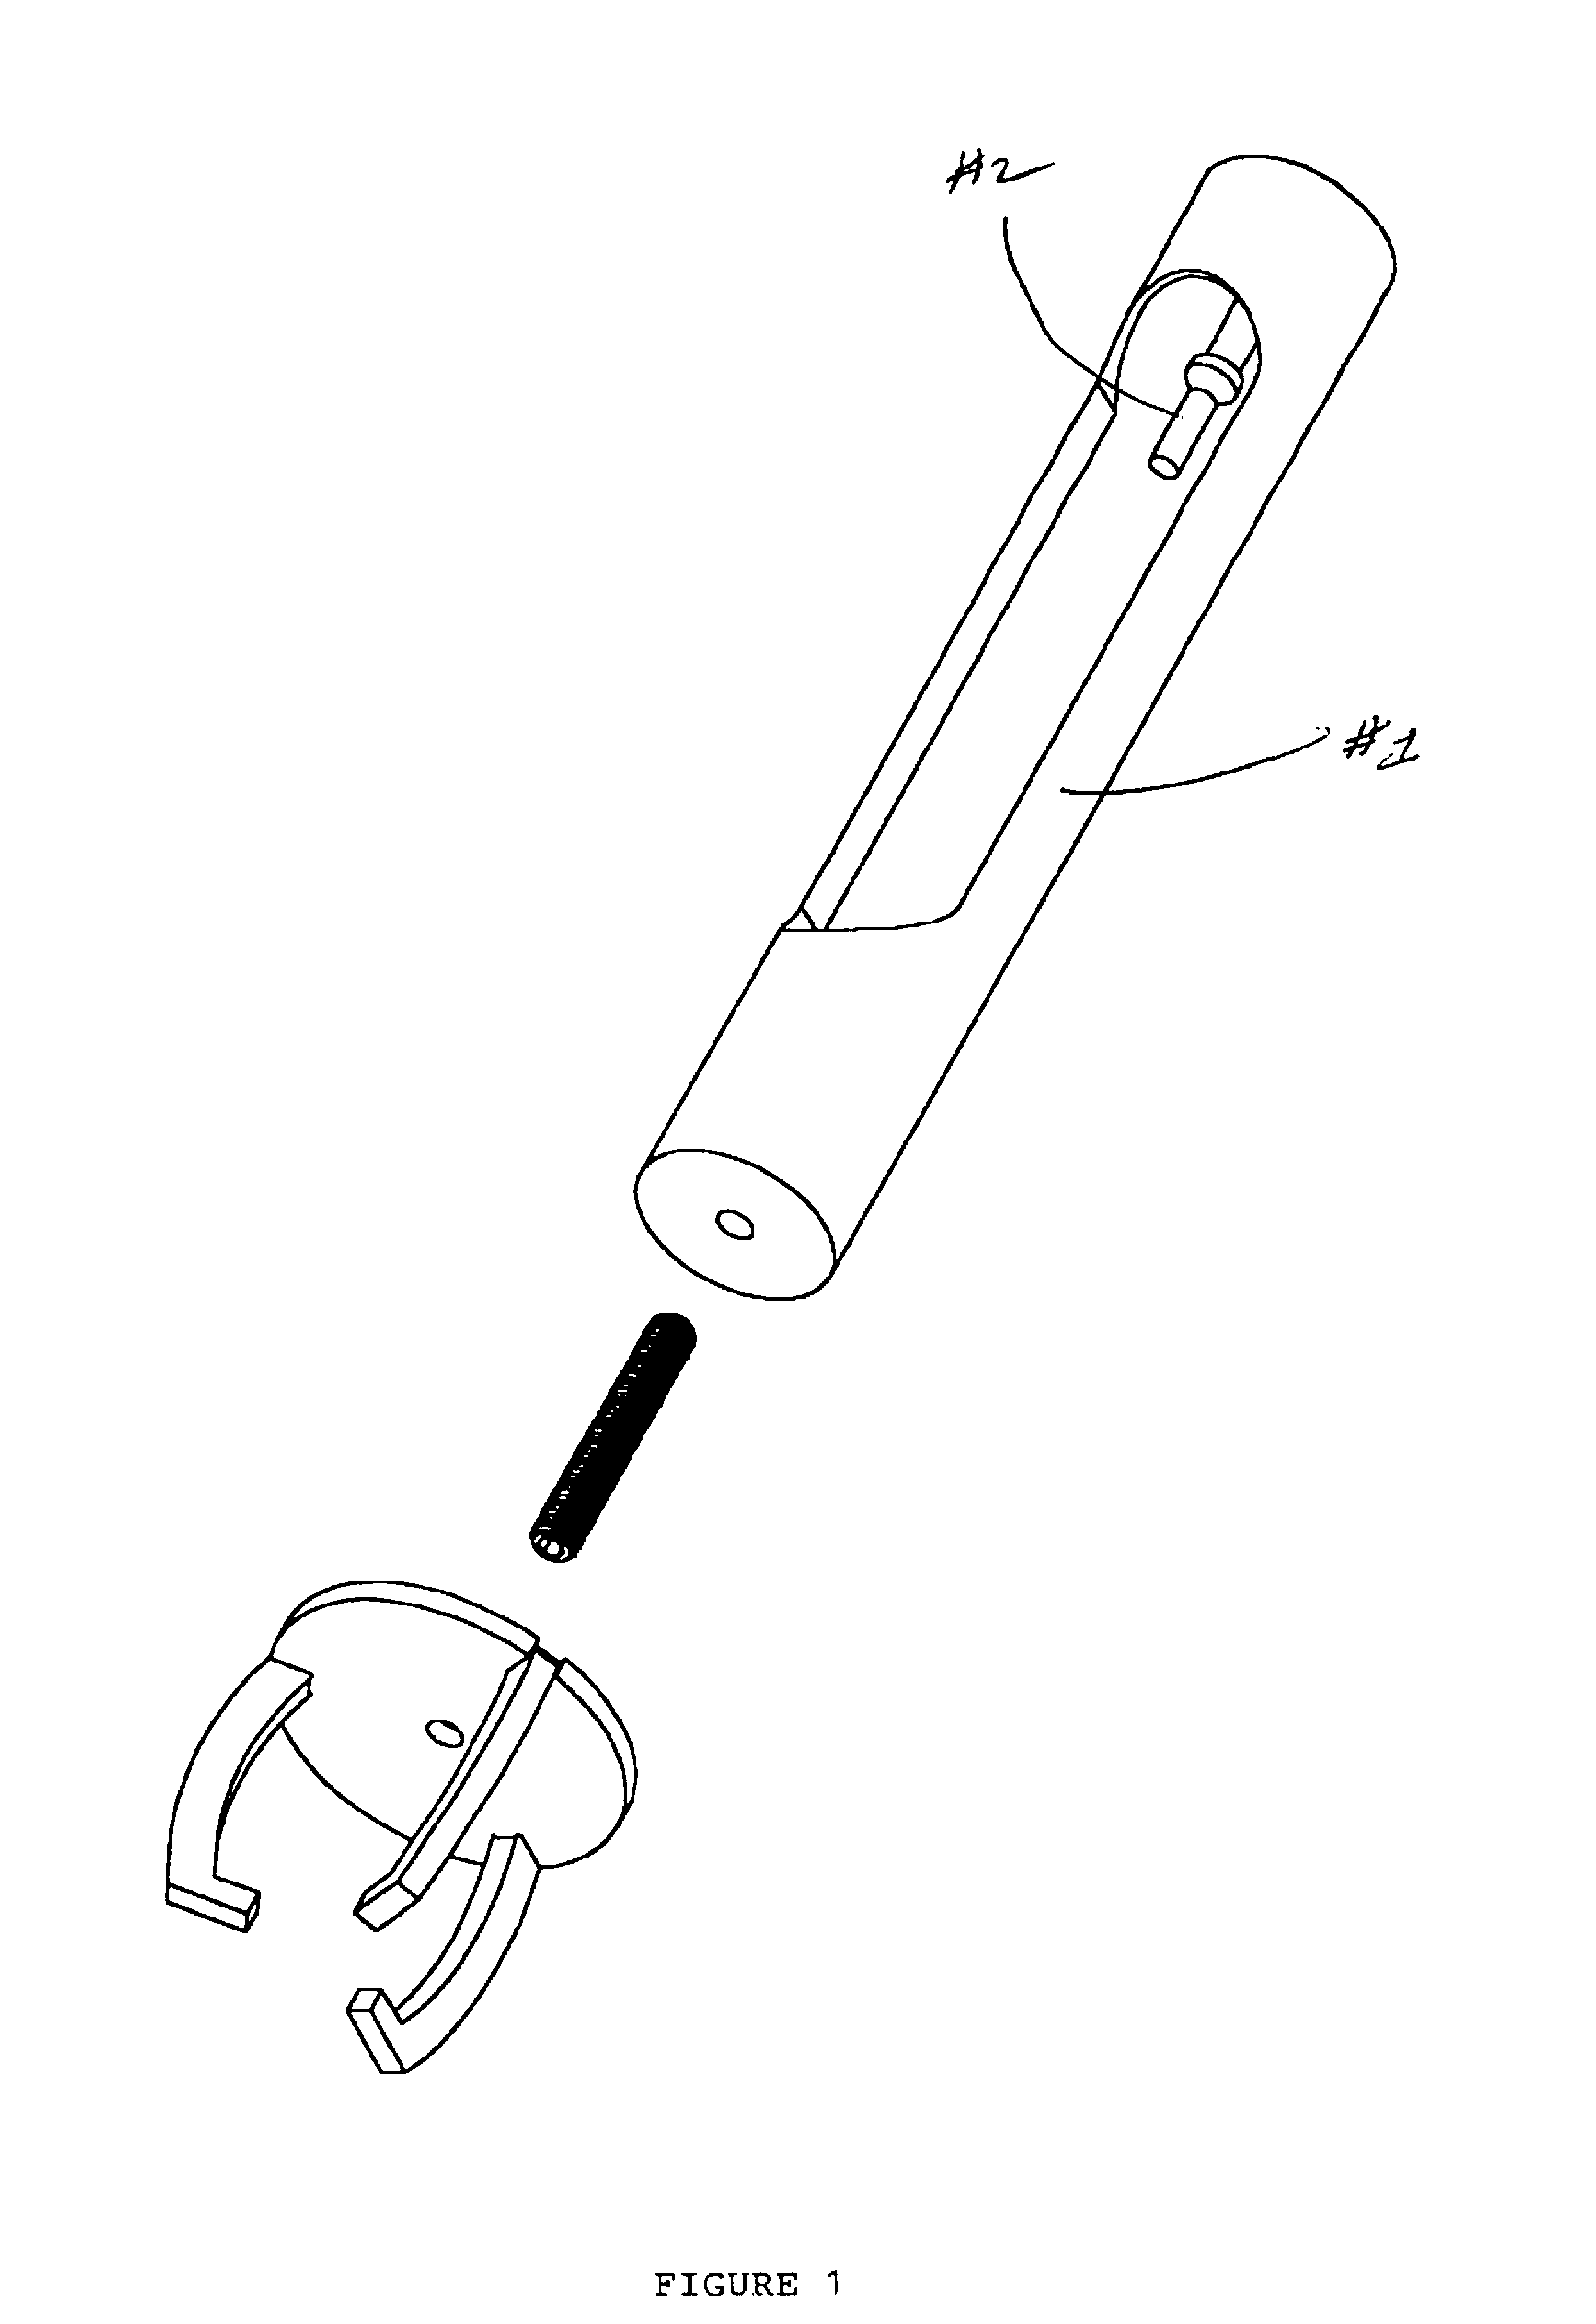 Power hammer puller